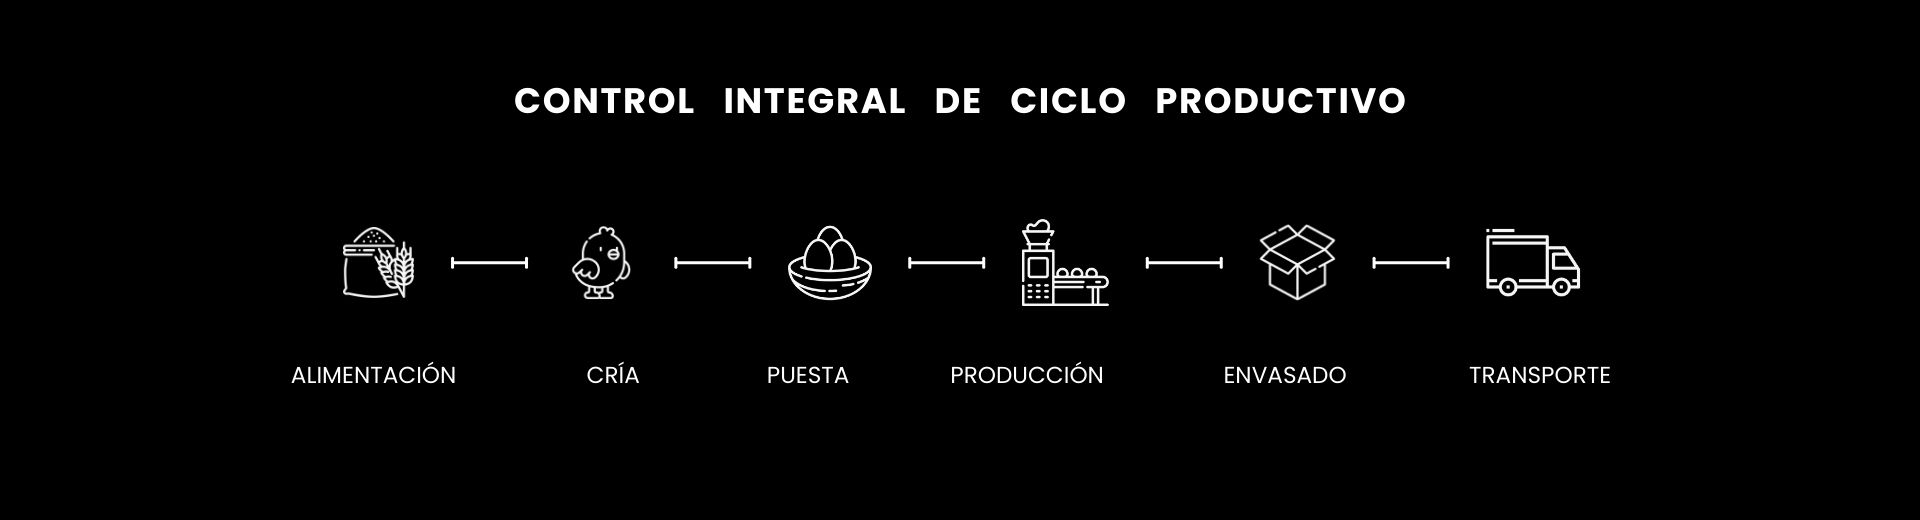 Infografía del ciclo productivo de la empresa Álvarez Camacho